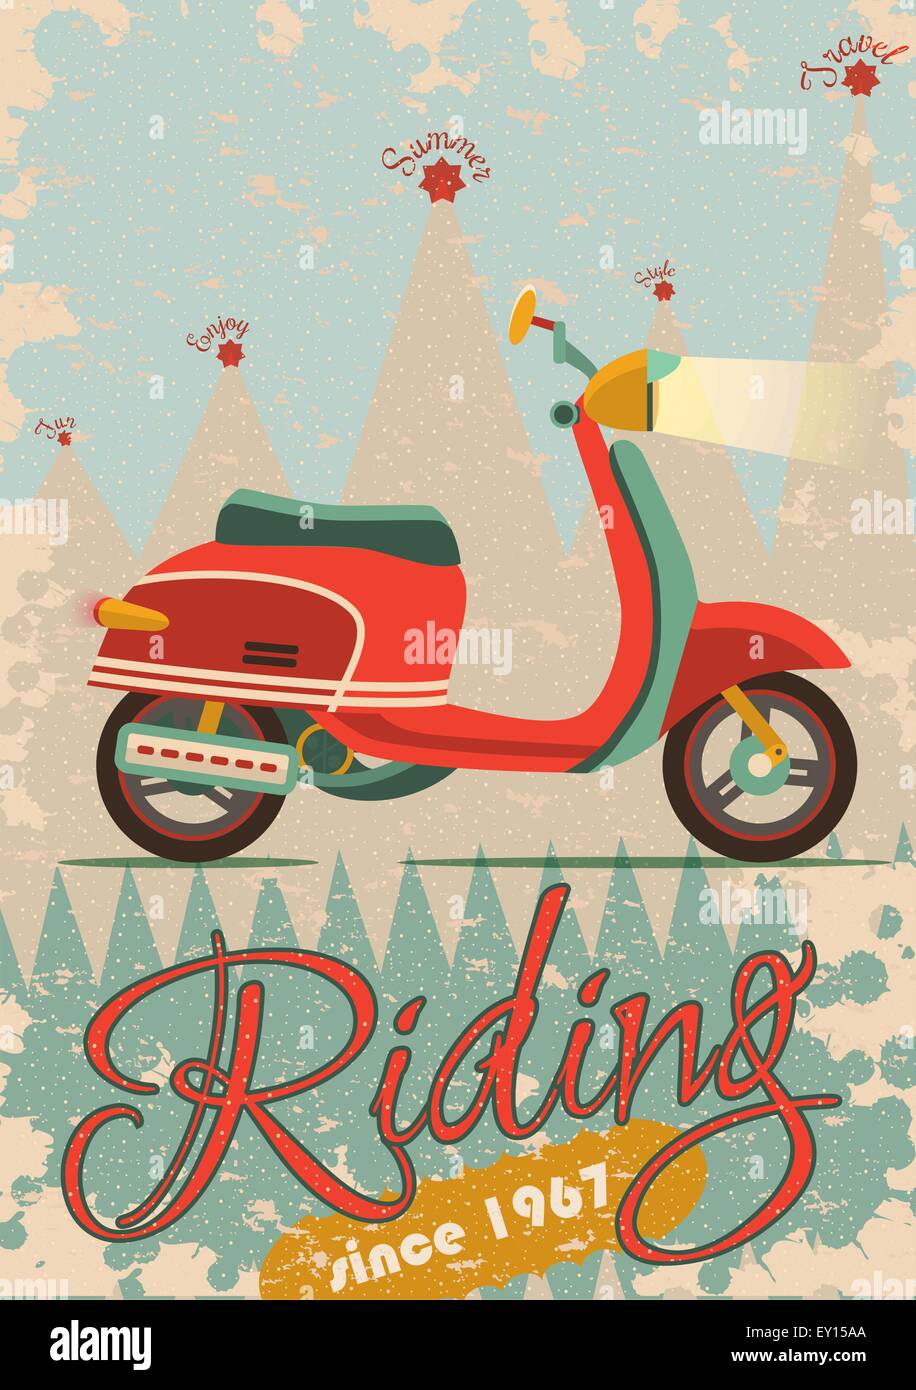 La conception d'affiches rétro vintage scooter avec l'illustration, l'exemple de texte, bannière et texture grunge Illustration de Vecteur